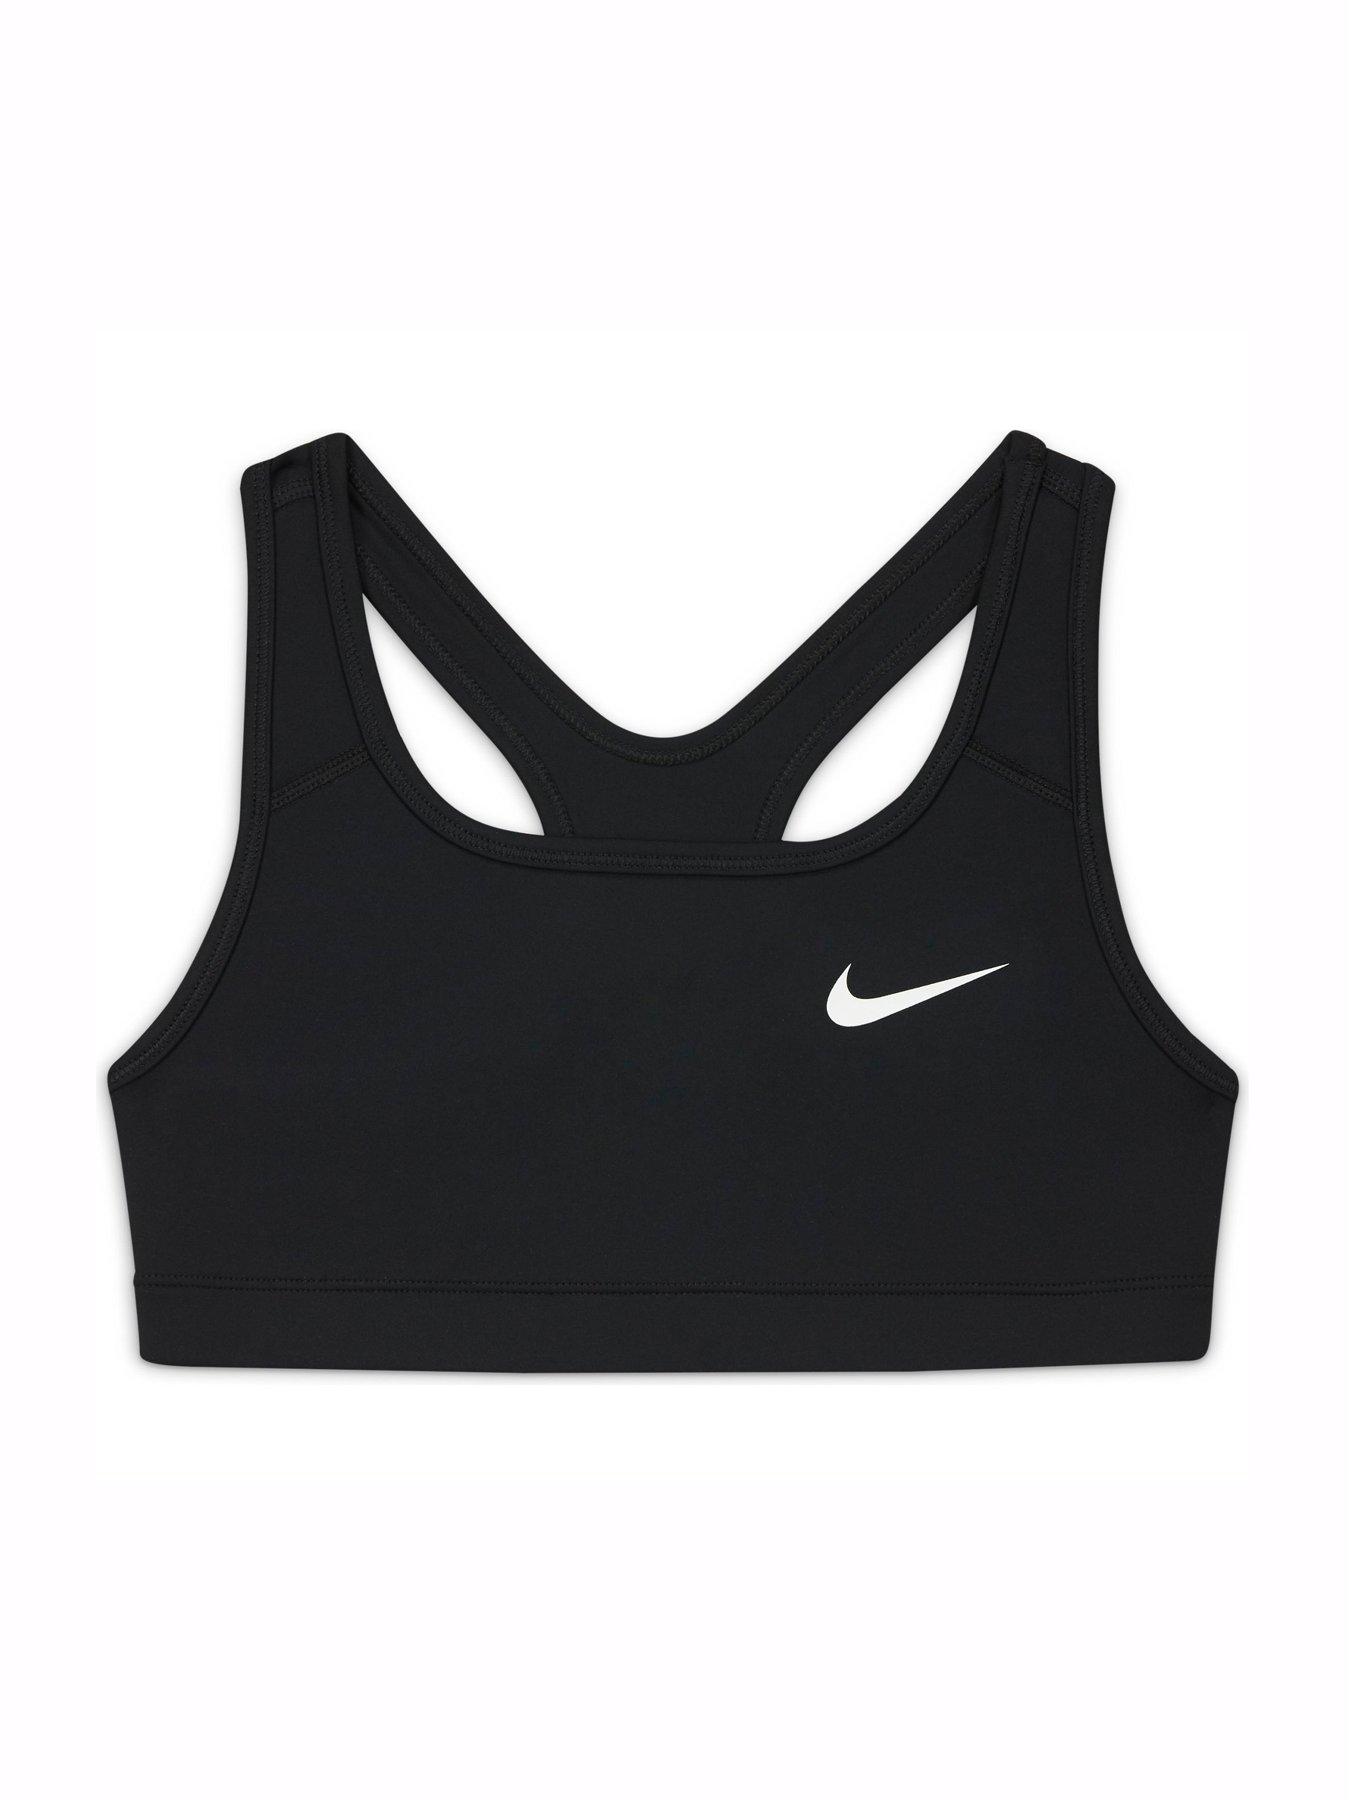 Nike sports bra size M  Sports bra sizing, Nike sports bra